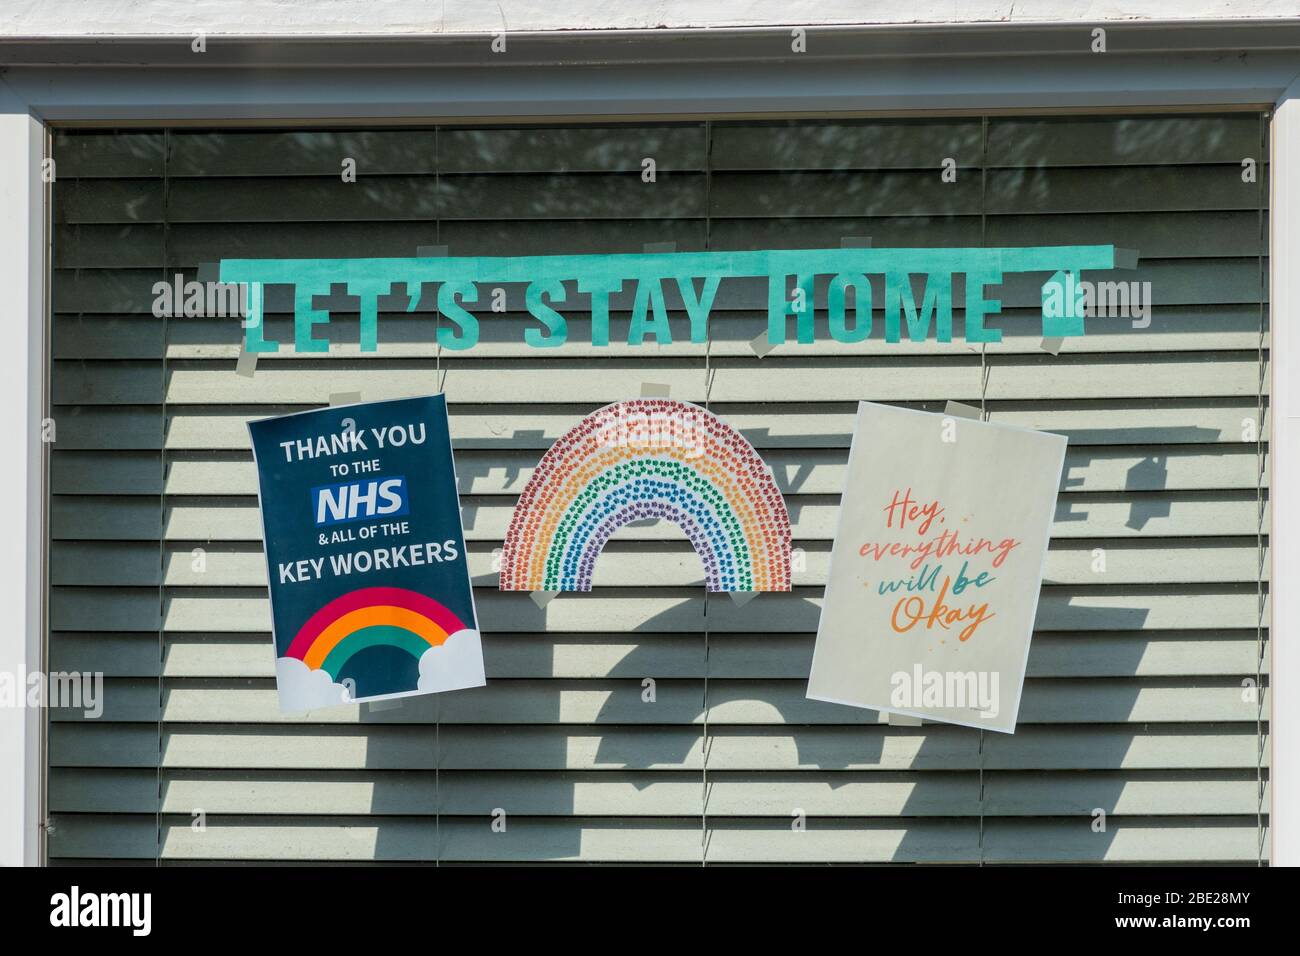 10 aprile 2020. Durante il periodo di blocco pandemico del Coronavirus Covid-19 del 2020, l'arcobaleno è diventato un simbolo di sostegno per le persone che vogliono mostrare solidarietà con i lavoratori della NHS in prima linea. Questa casa ha un'immagine arcobaleno, un poster che dice grazie al personale NHS e tutti i lavoratori chiave, un messaggio rimaniamo a casa, e un messaggio positivo di speranza che tutto sarà OK, visualizzato in una finestra. Foto Stock